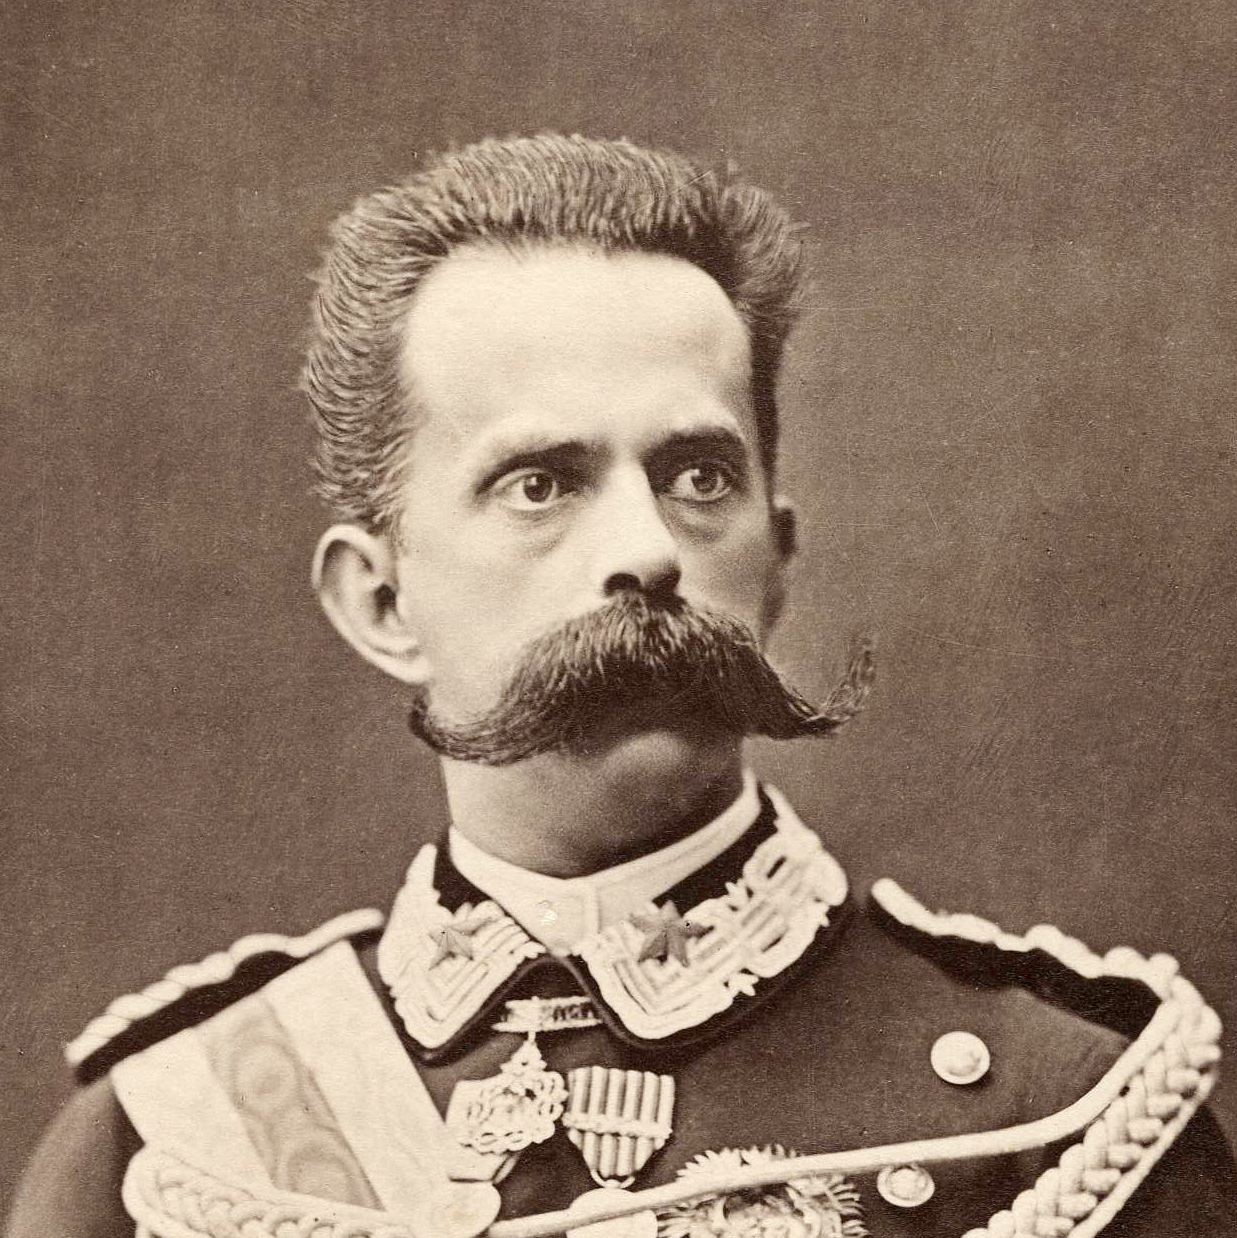 Kingdom of Italy, Umberto I, 1878 - 1900